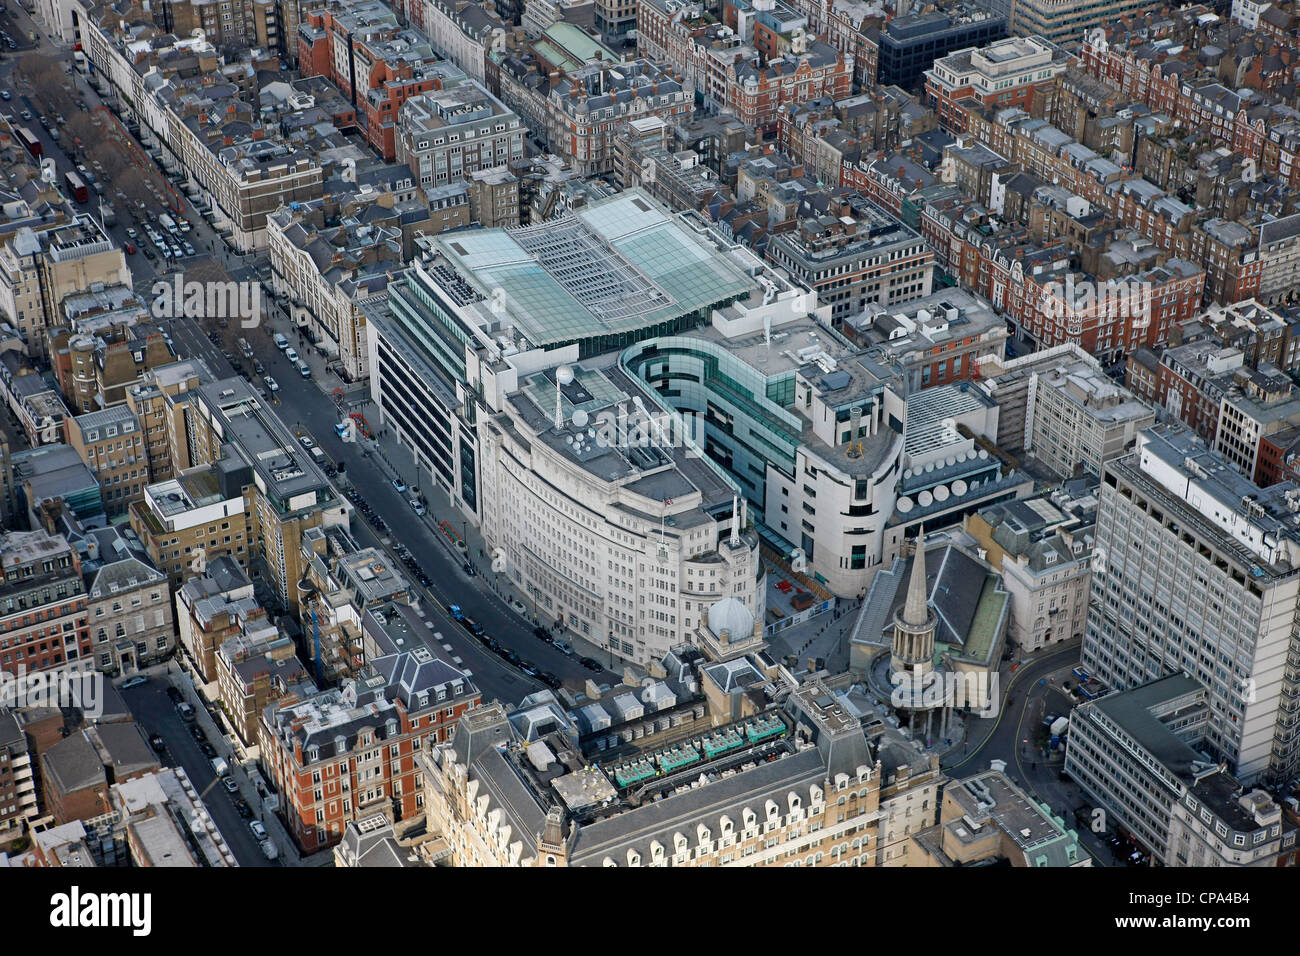 Imagen aérea del edificio de radio de la BBC en Londres Foto de stock